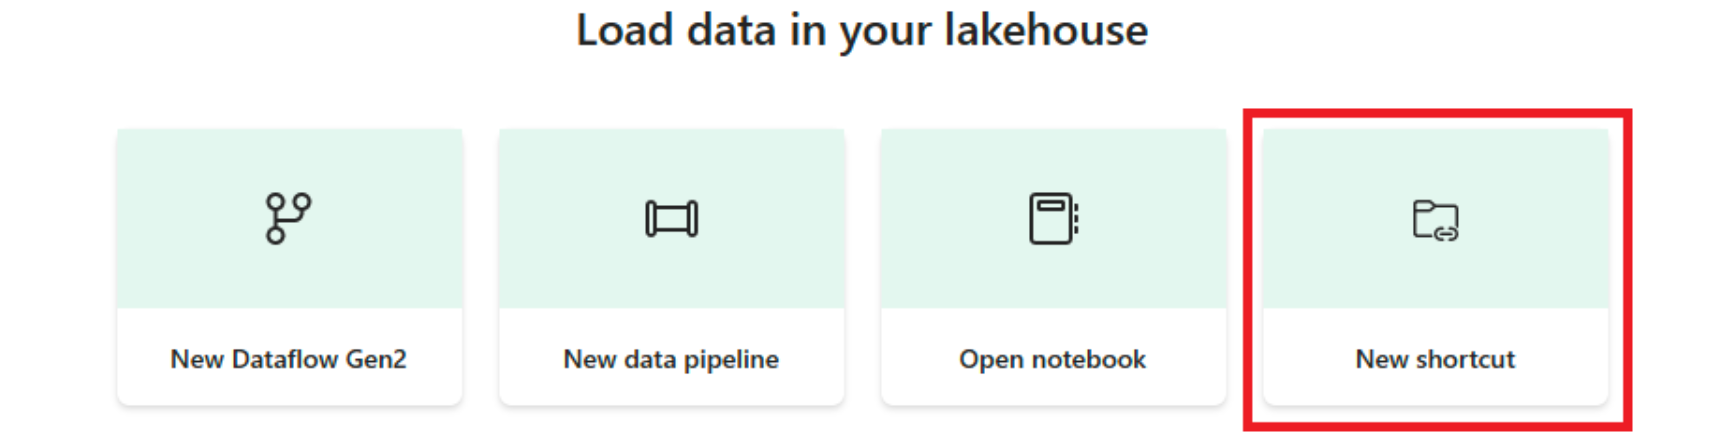 Снимок экрана с портала Fabric: загрузка данных в меню lakehouse на целевой странице. Кнопка Создать ярлык имеет красный цвет.